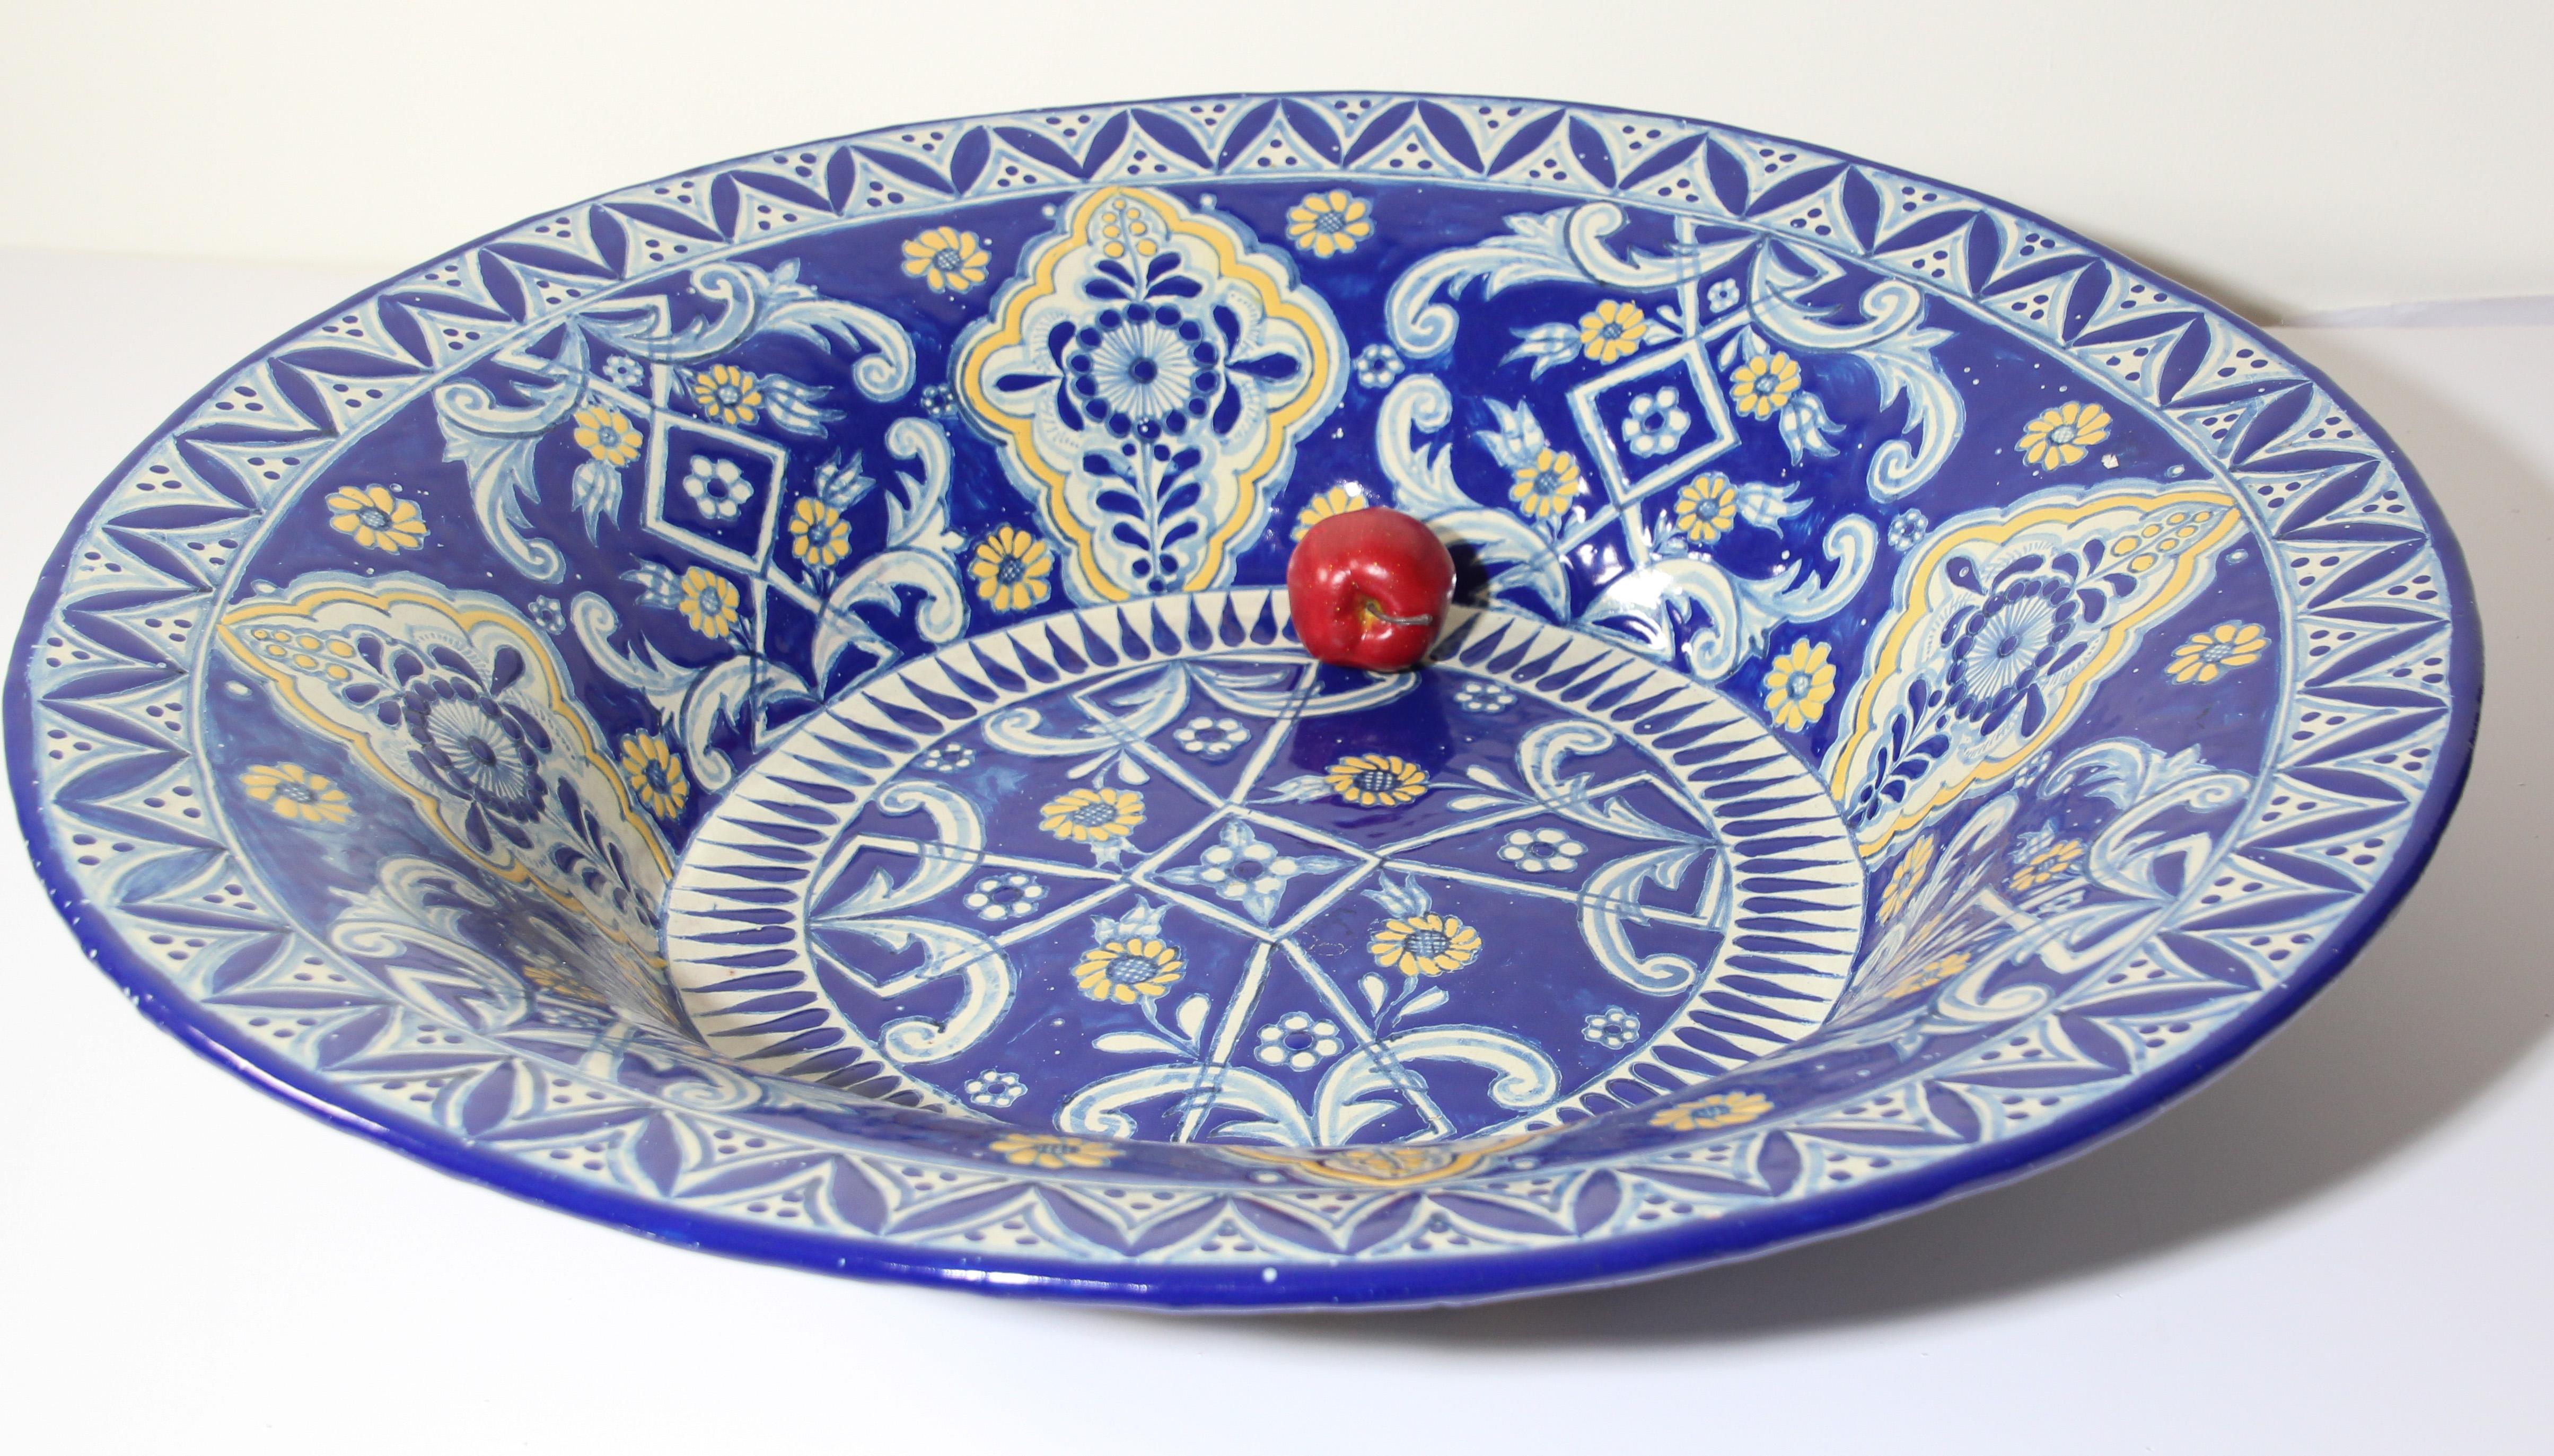 Authentische übergroße, sehr feine blau-weiße mexikanische Talavera de la Reina glasierte Keramikschale.
Riesige blaue und weiße mexikanische Talavera-Keramik, handgefertigt und handbemalt mit Blumenmustern in Blau- und Gelbtönen.
Oben und unten